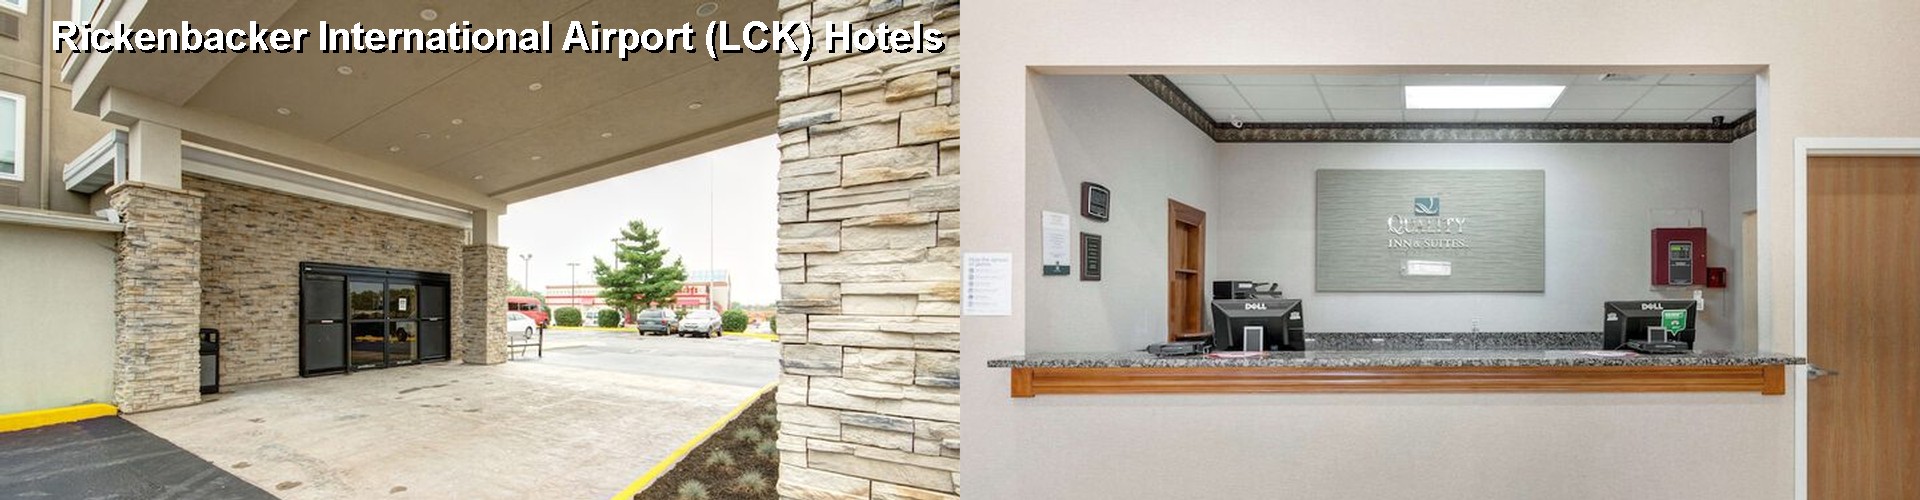 3 Best Hotels near Rickenbacker International Airport (LCK)